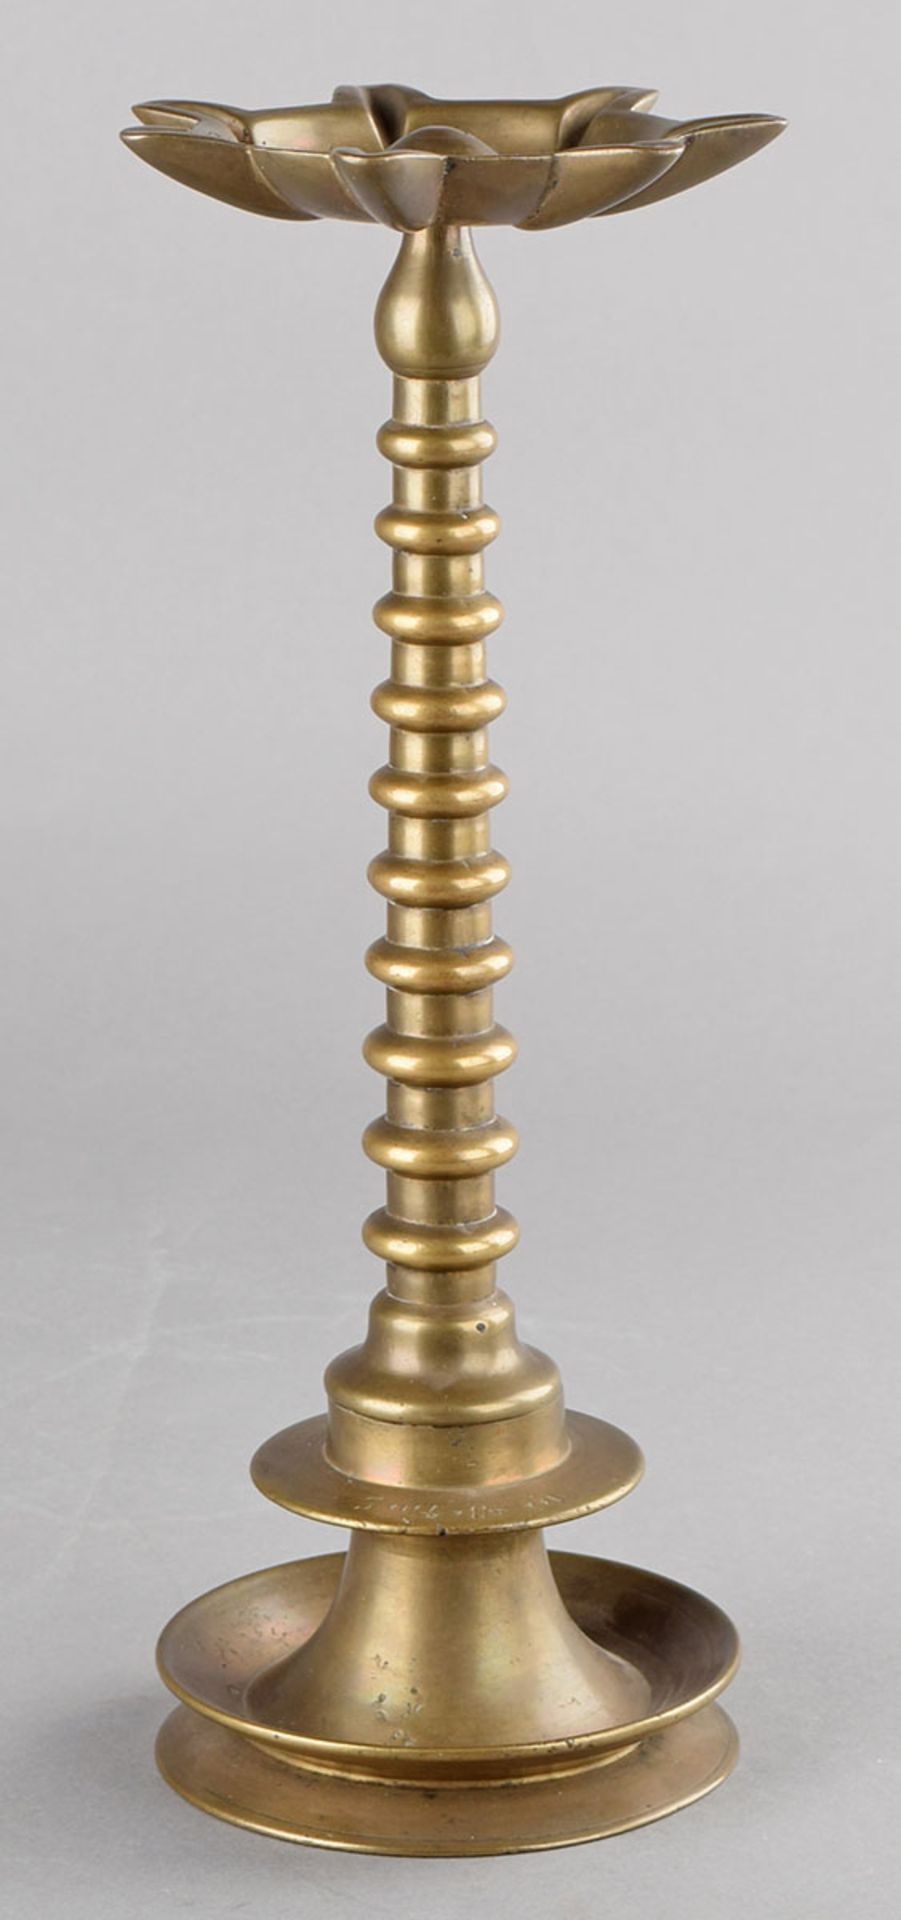 Chanukka-Leuchter Bronze, profilierter Rundfuß, in Manschette hebräische Schrift, schlanker Schaft - Bild 2 aus 2